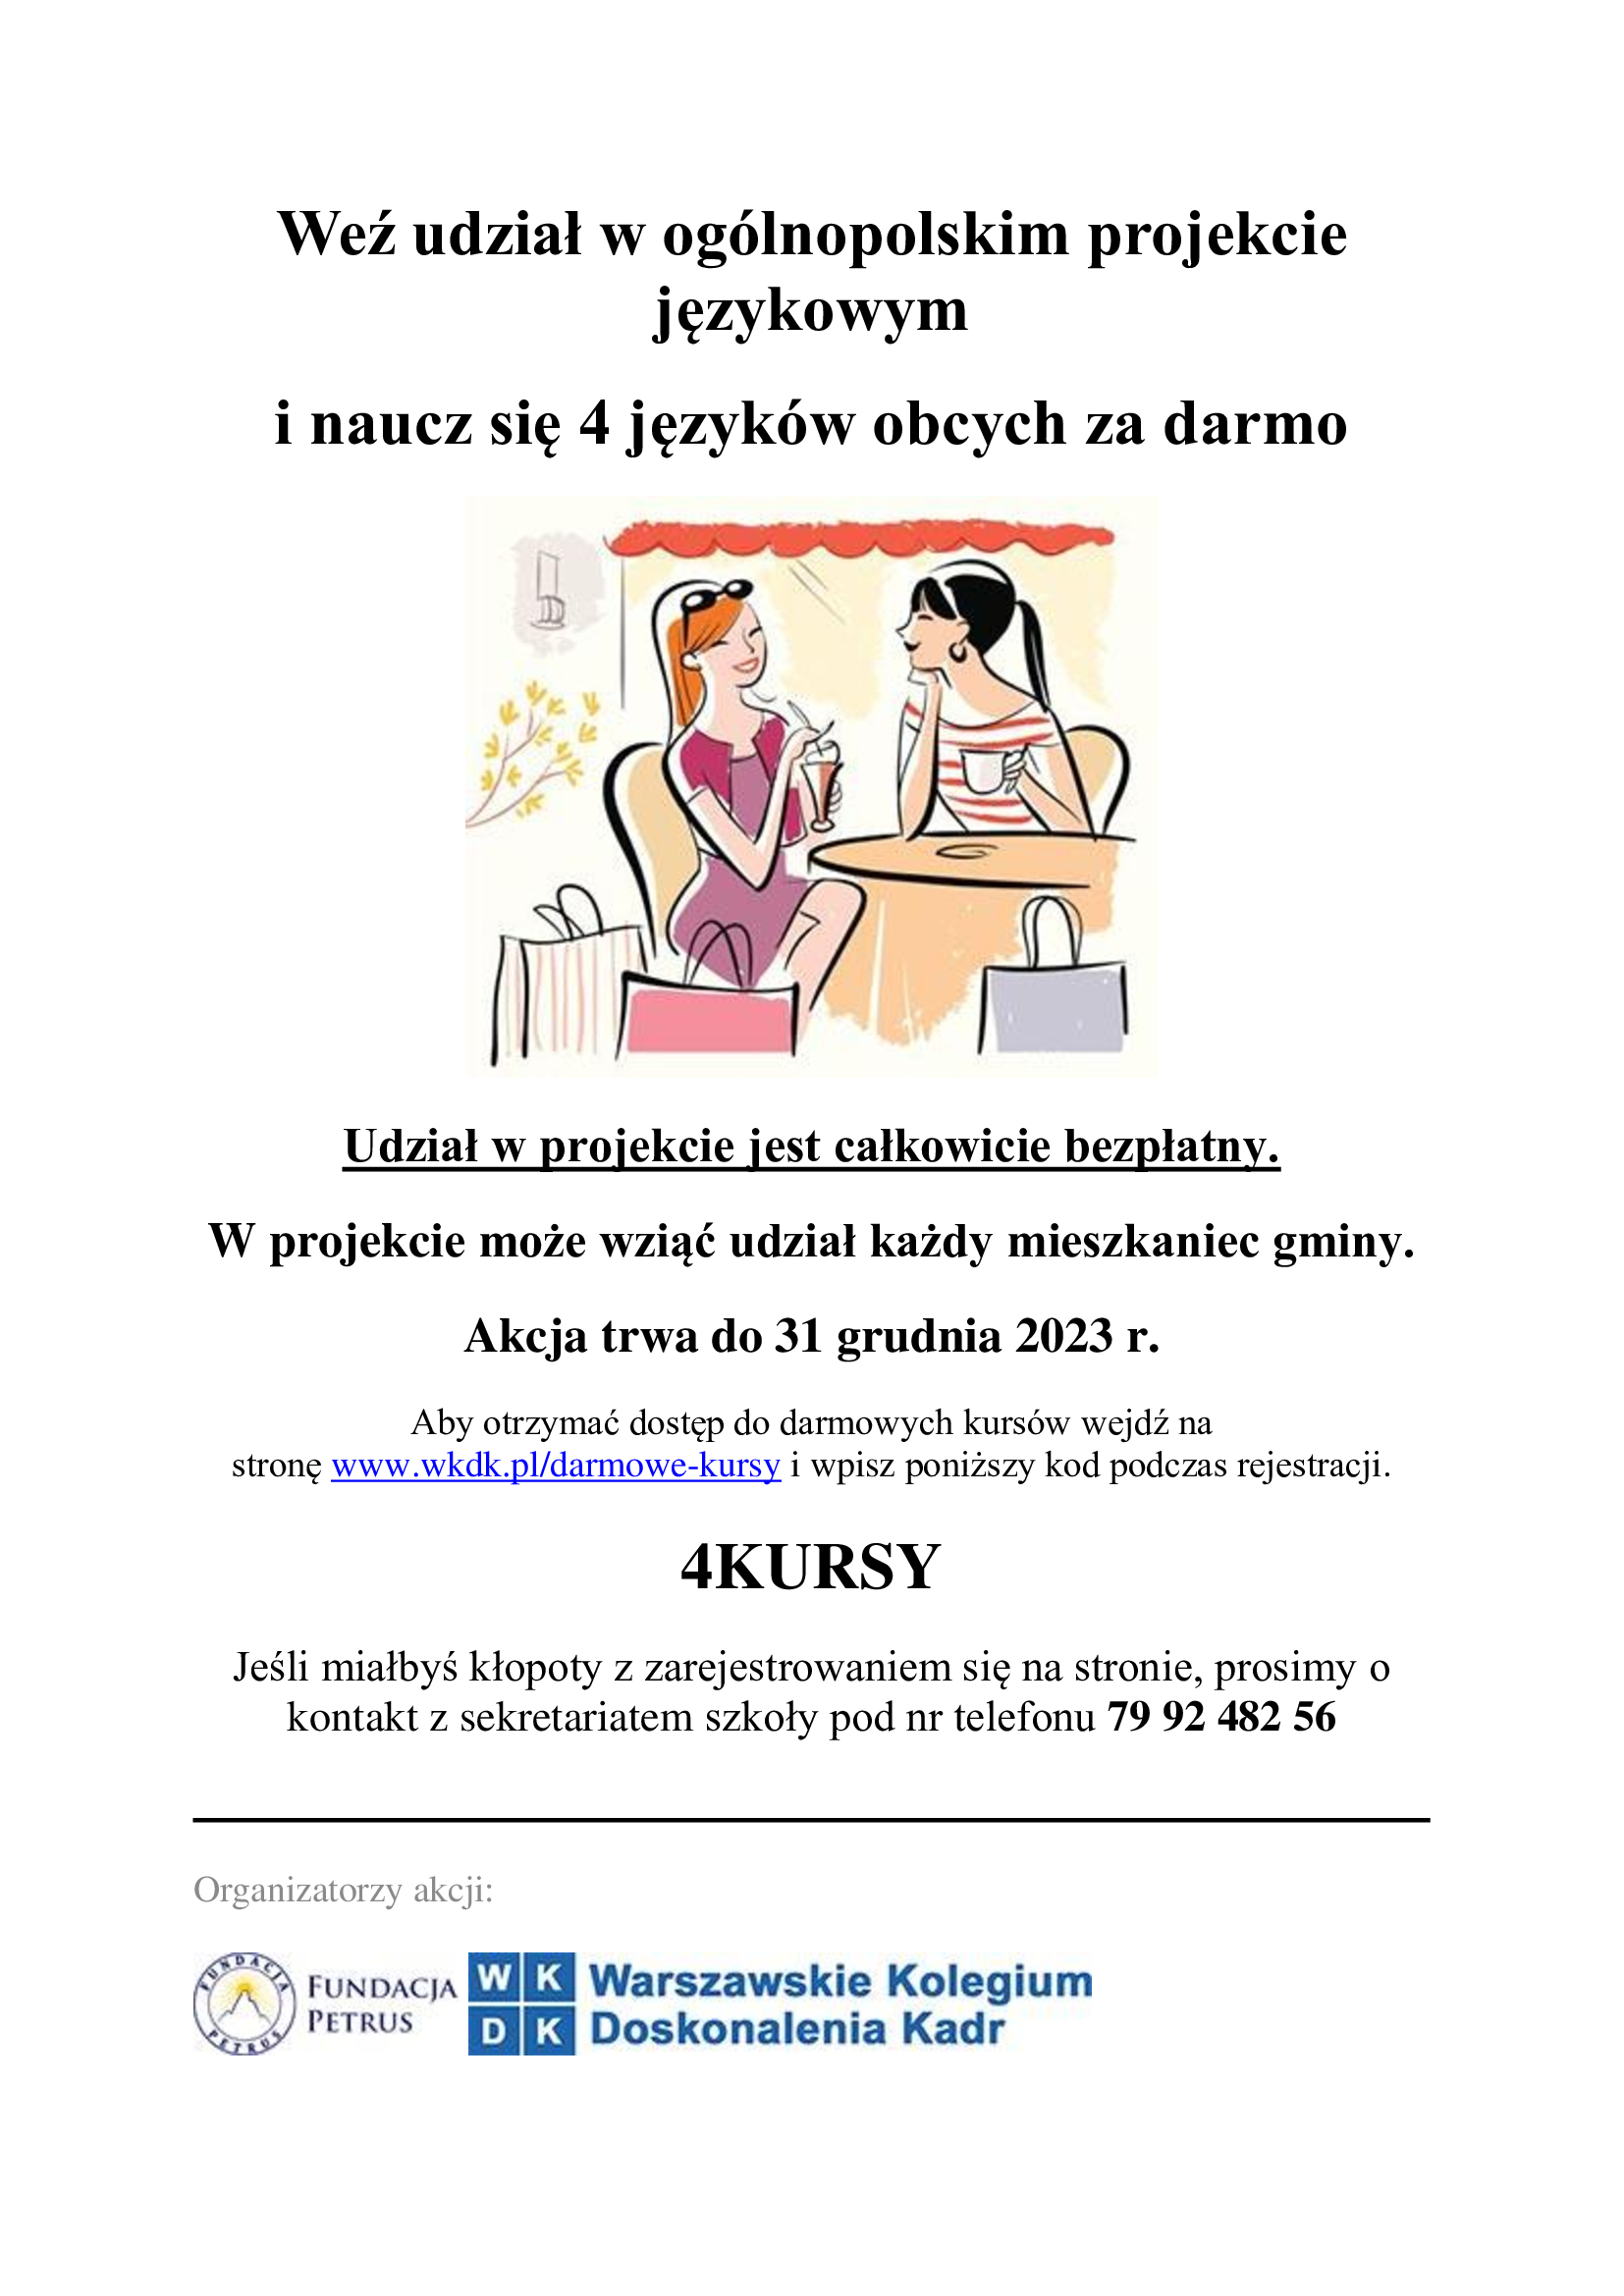 Plakat ogólnopolskiego projektu „Naucz się 4 języków obcych w 12 miesięcy za darmo”.